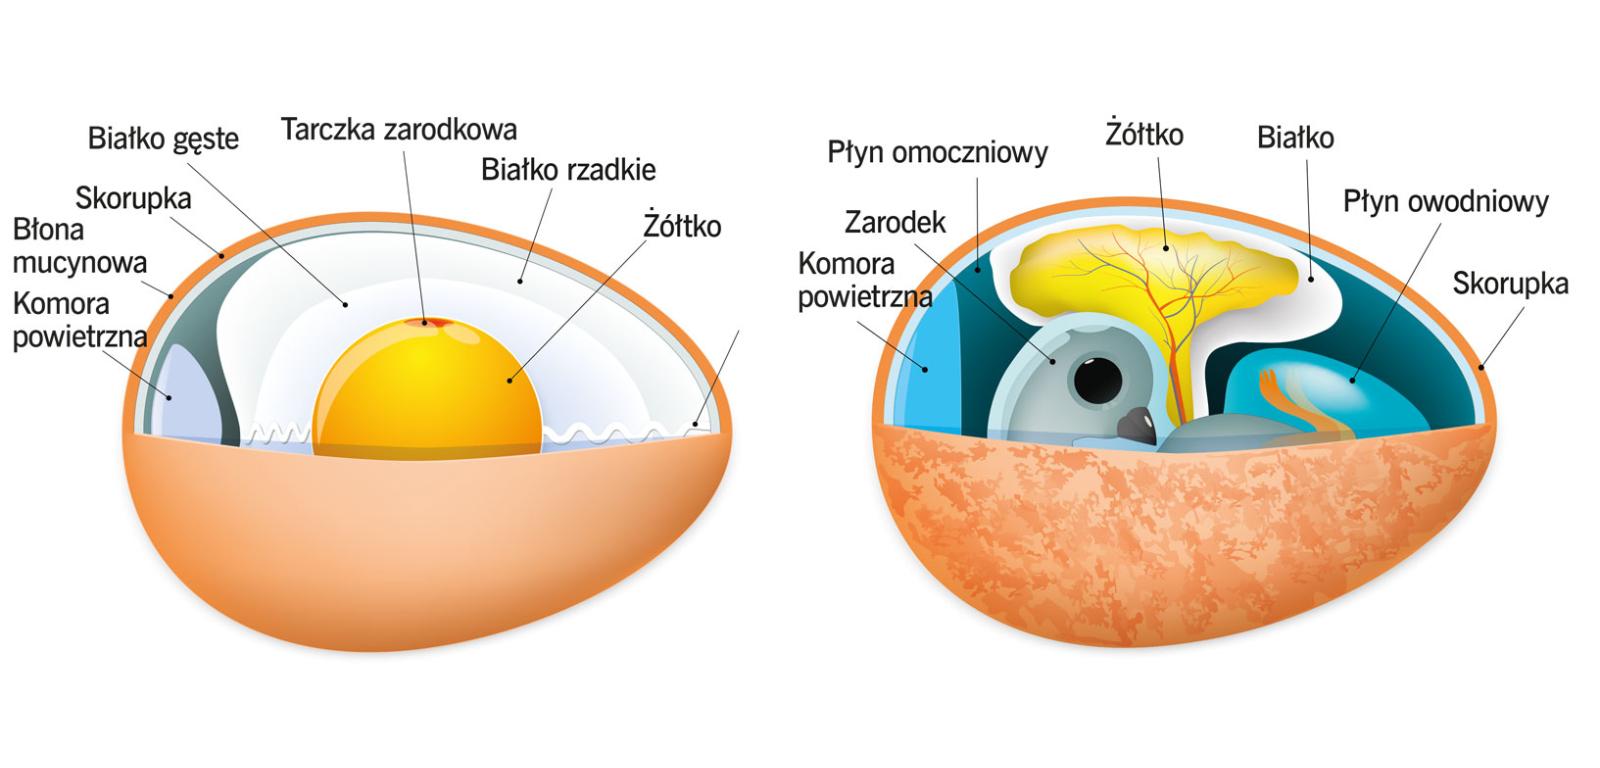 Budowa jaja i rozwijającego się w nim zarodka.